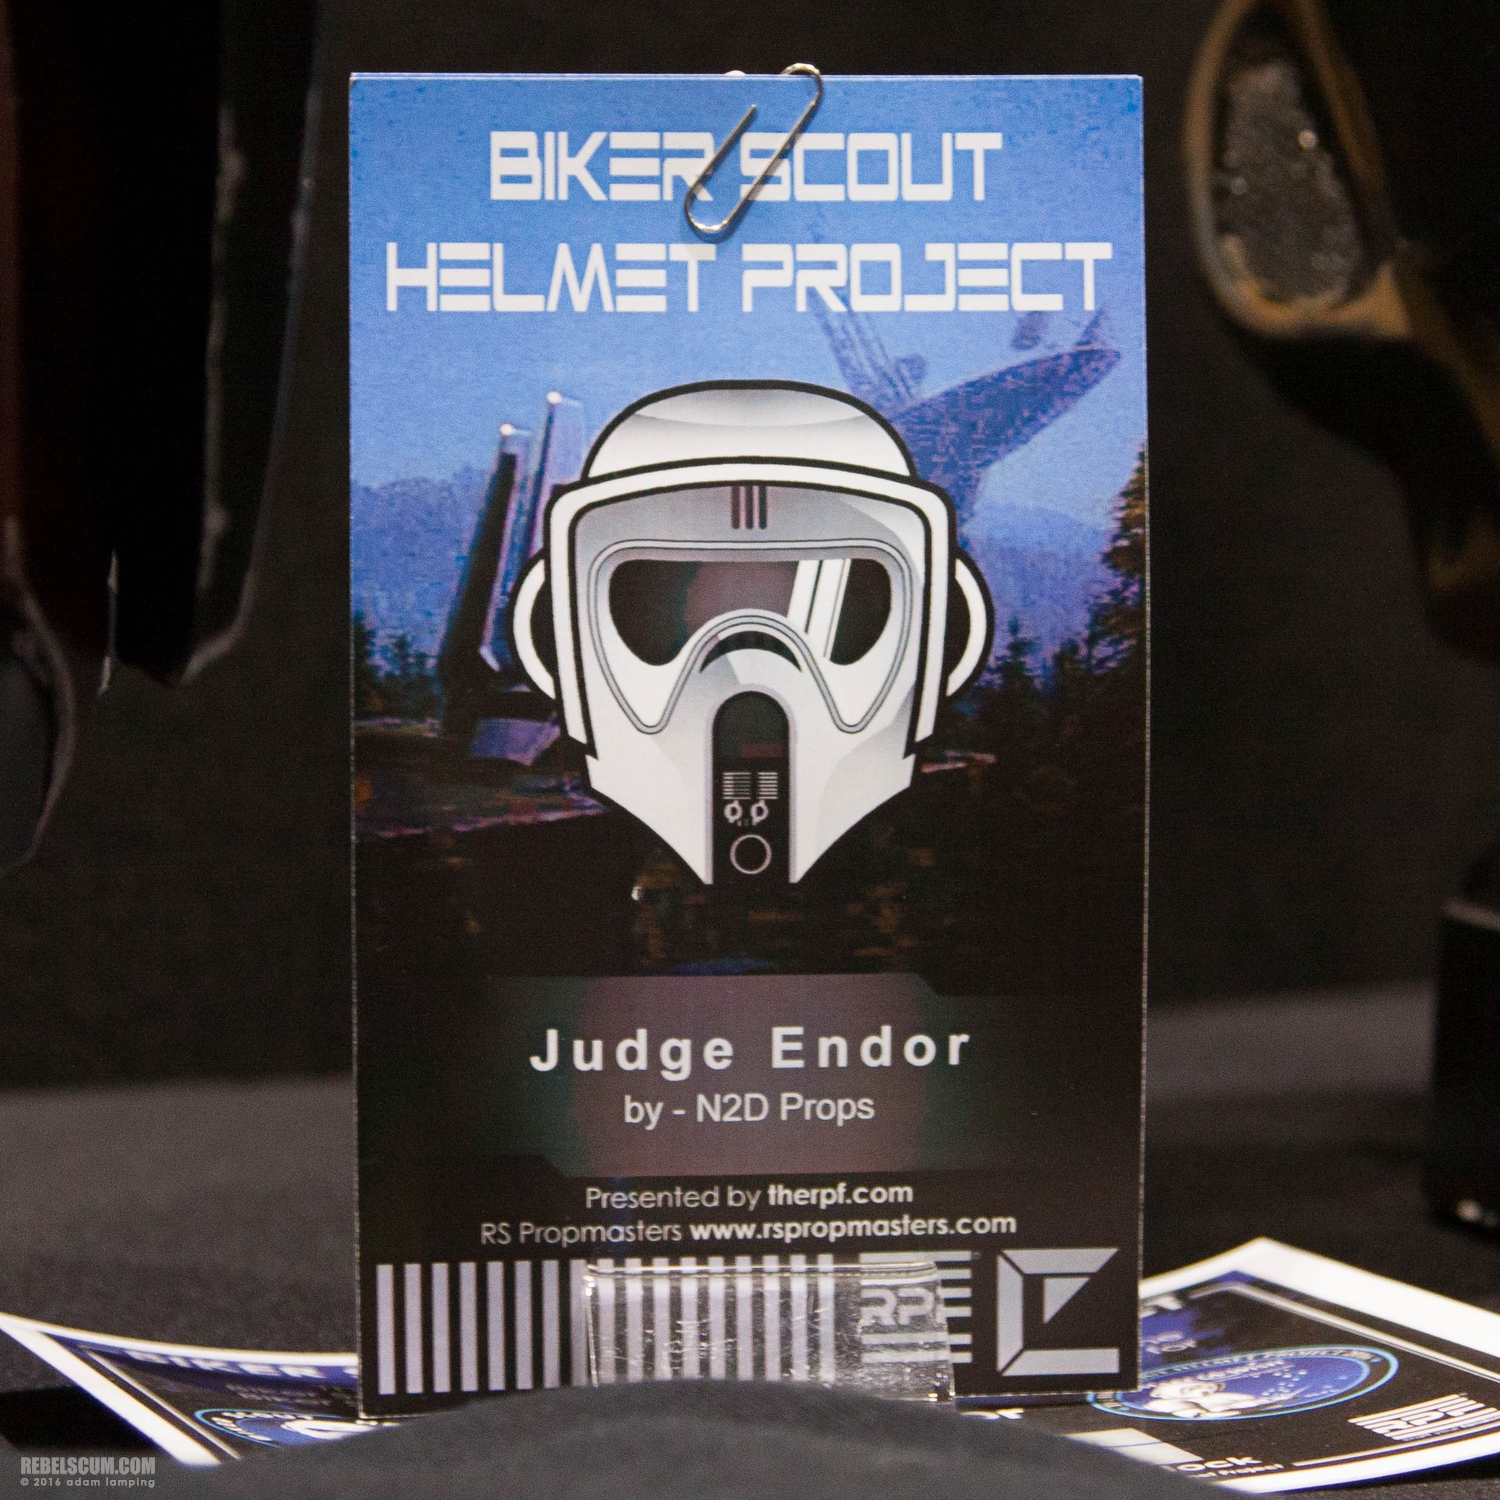 star-wars-celebration-2016-biker-scout-helmet-project-113.jpg